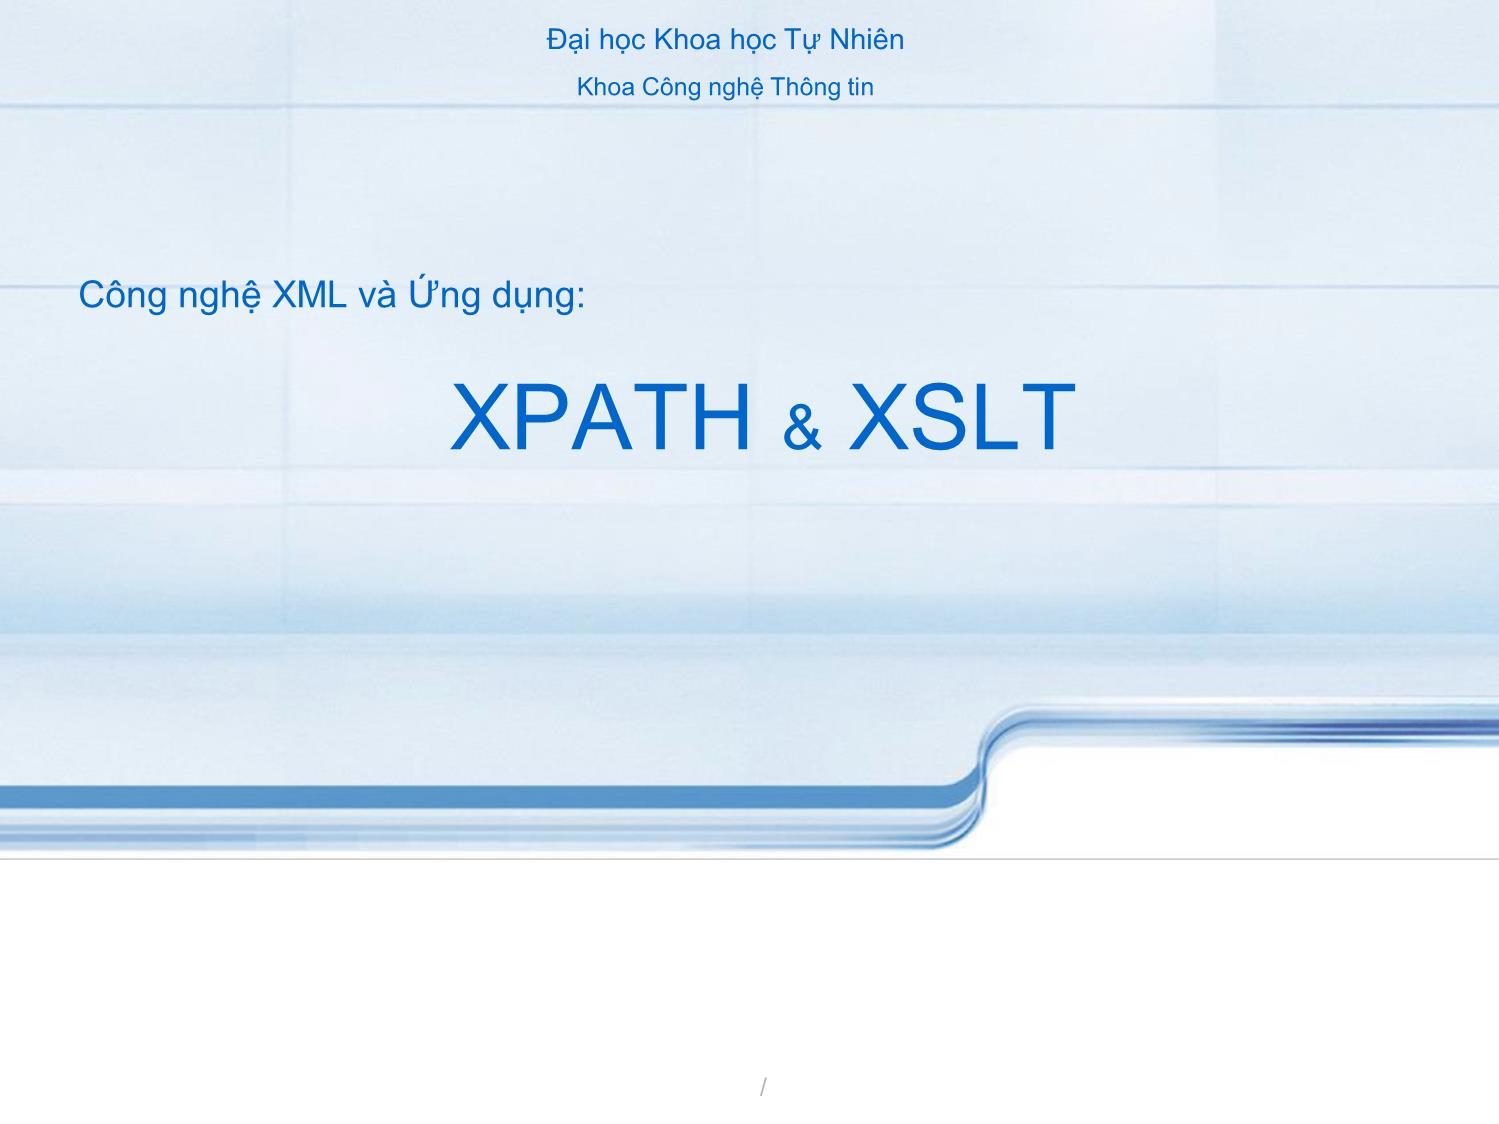 Công nghệ XML và ứng dụng XPATH & XSLT trang 1